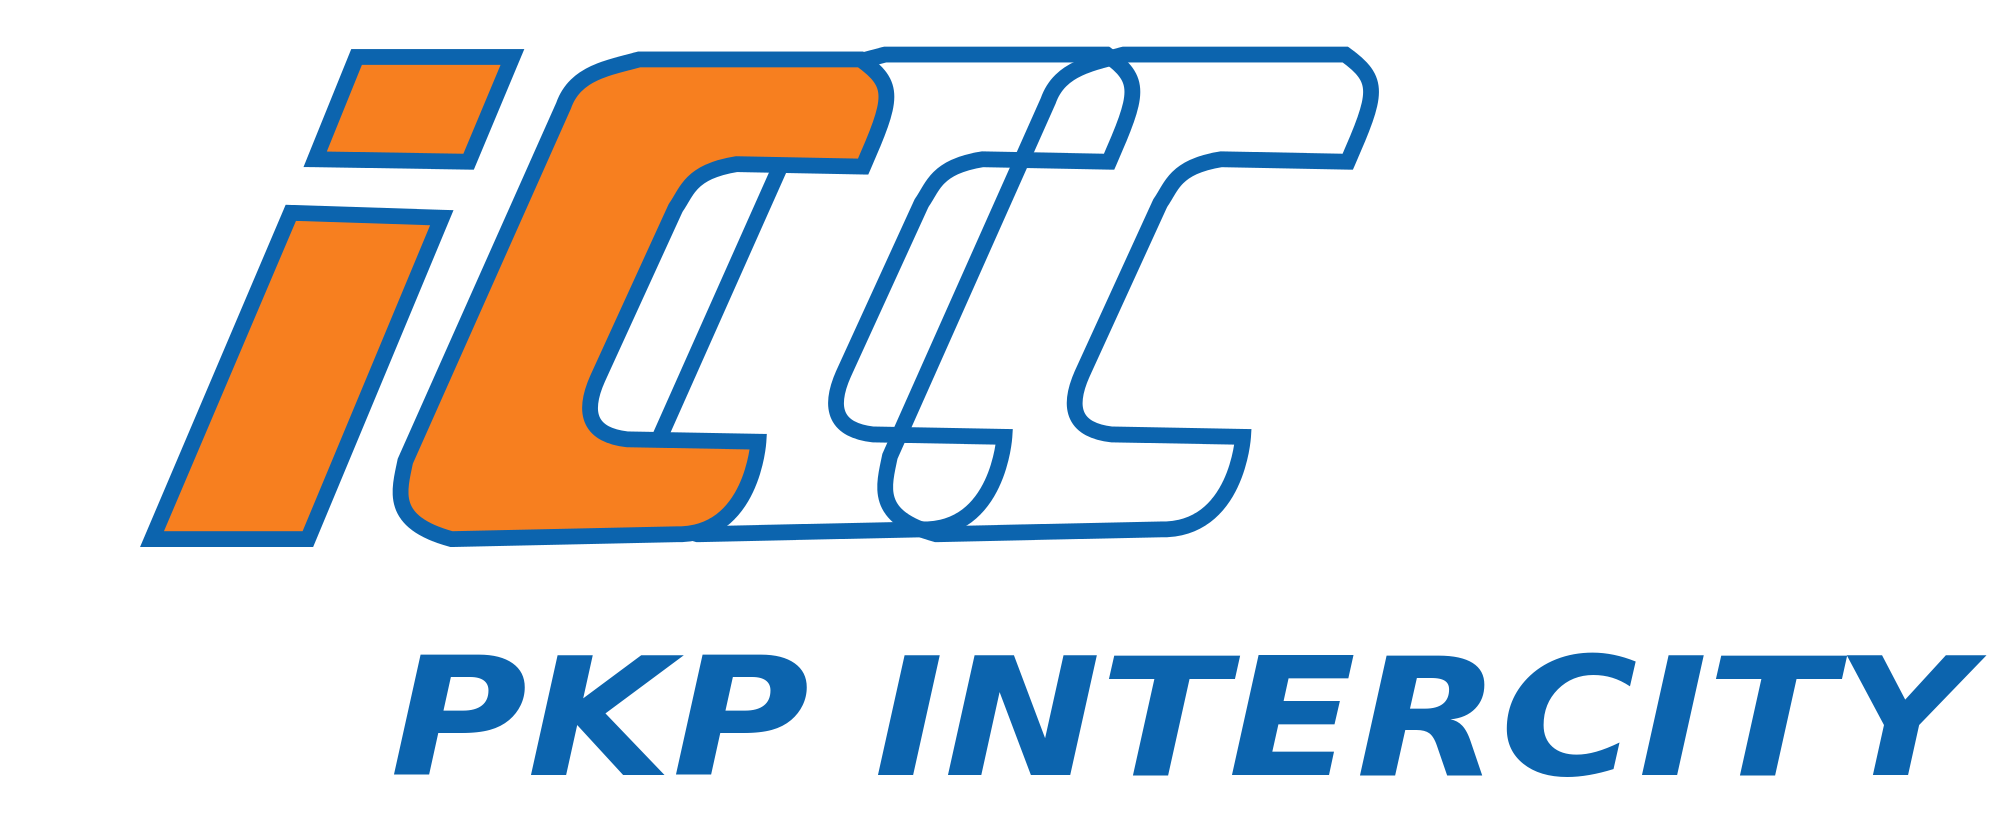 Obraz przedstawia logo firmy PKP Intercity